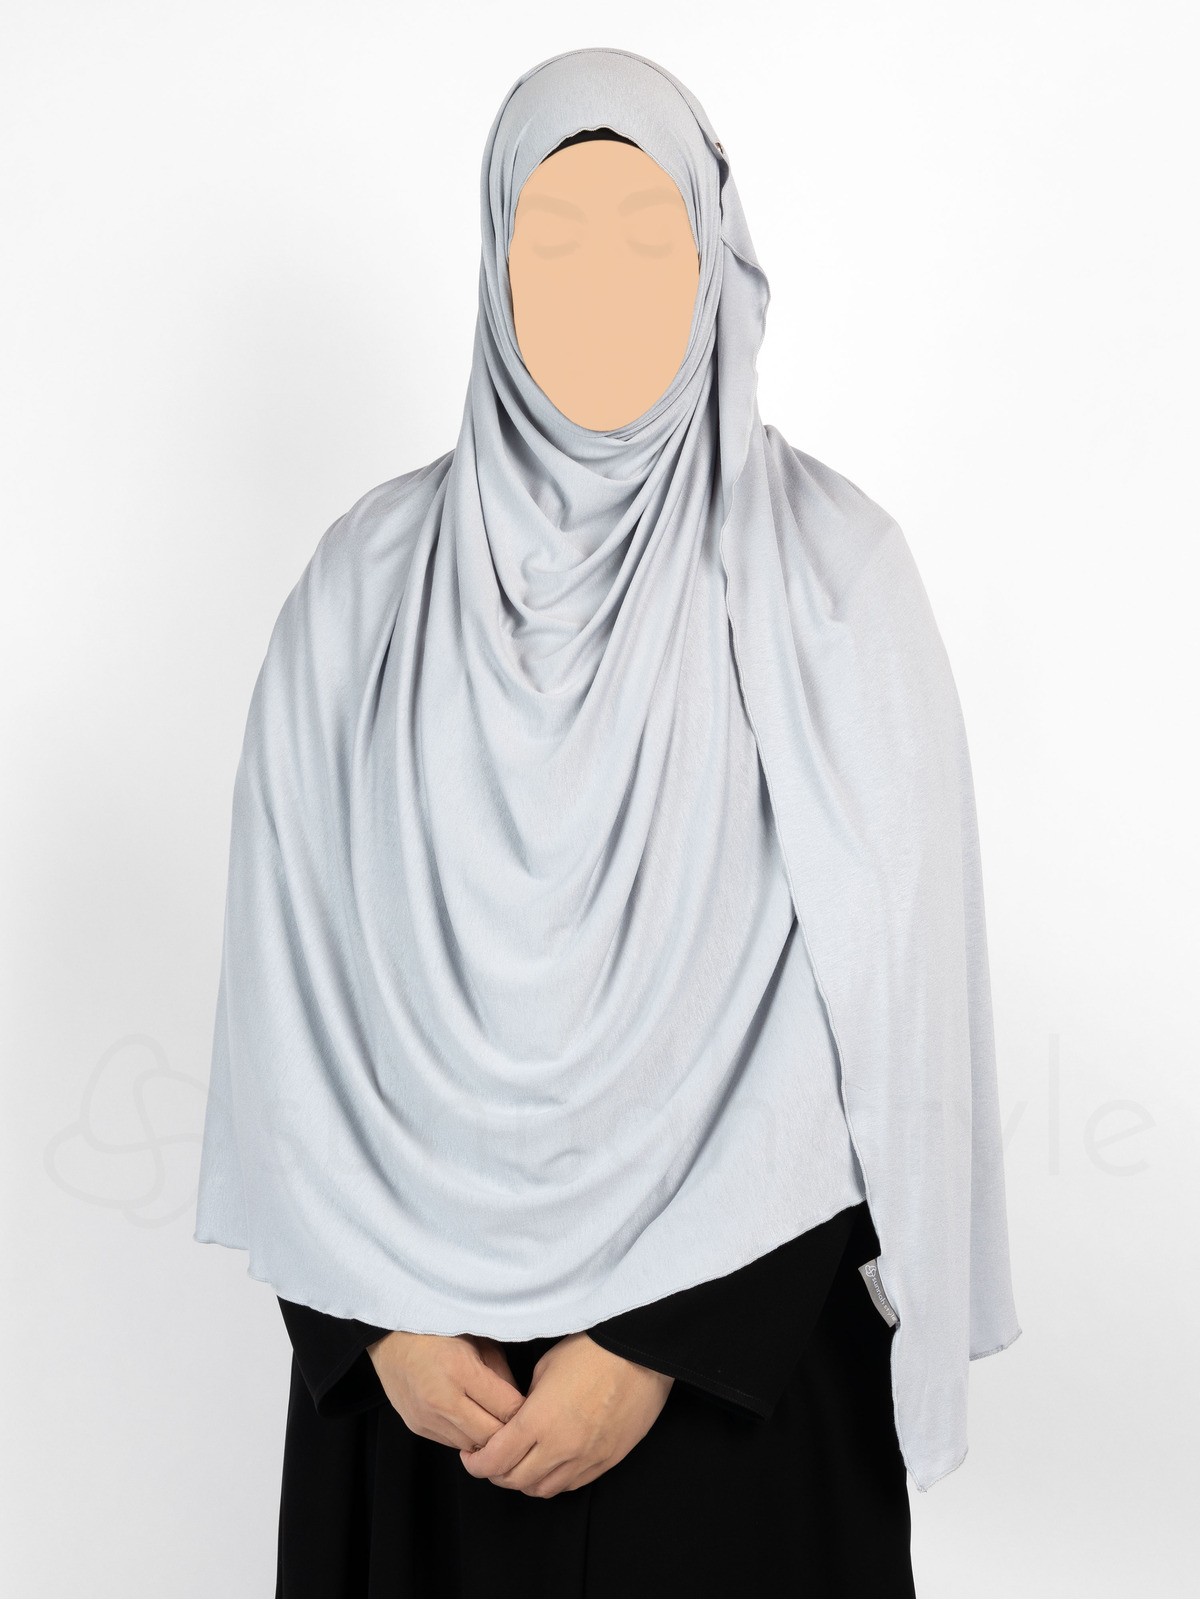 Sunnah Style - Urban Shayla (Soft Jersey) - XL (Silver Grey)